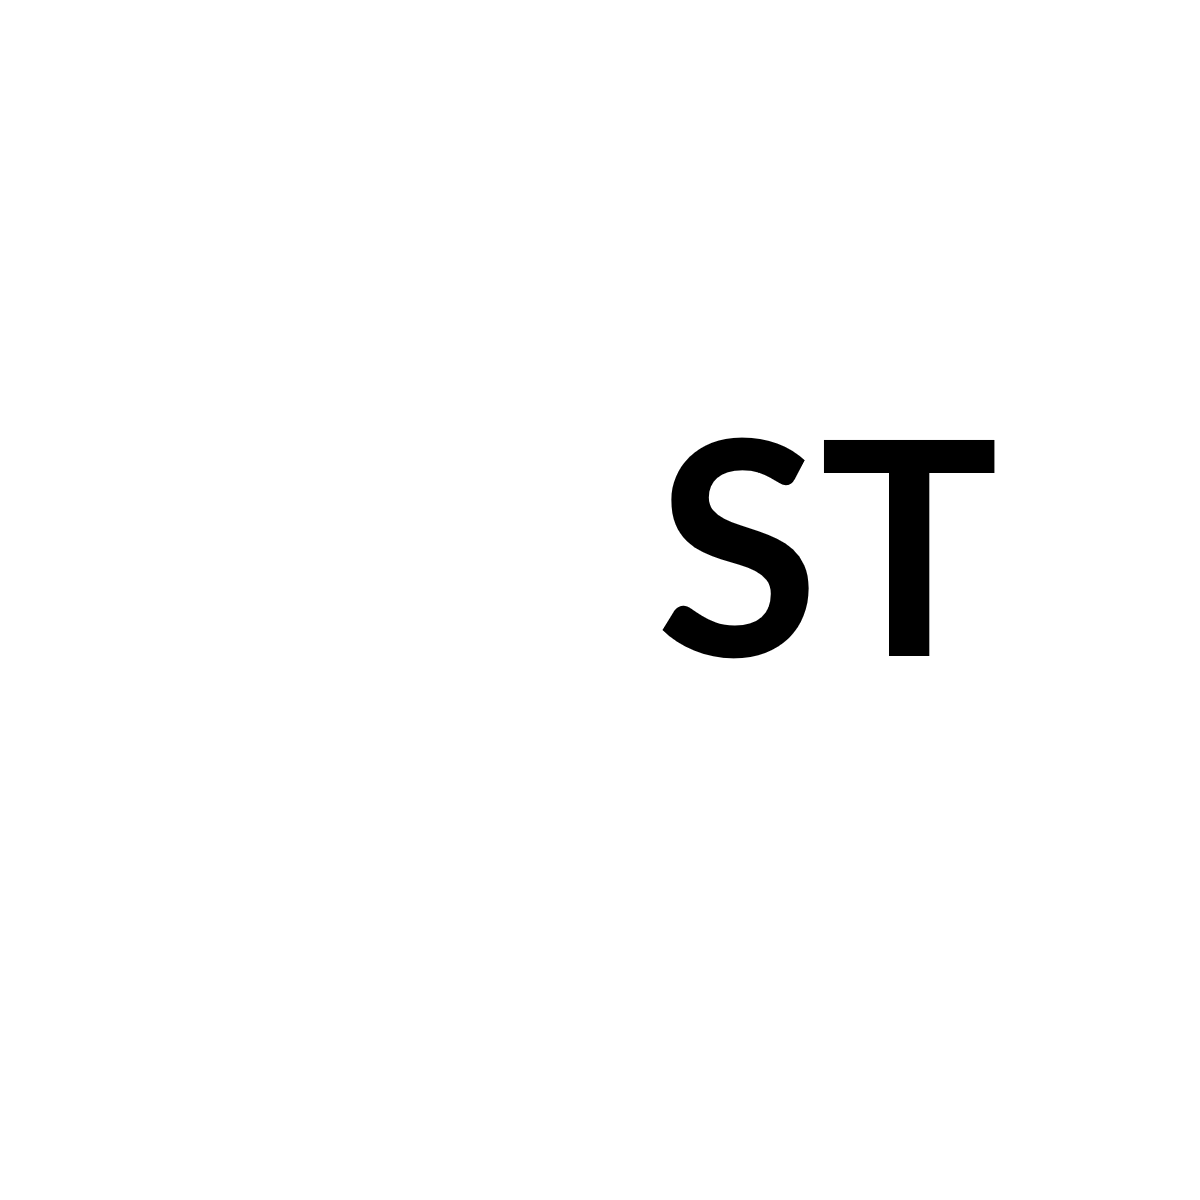 Stefan Tietze